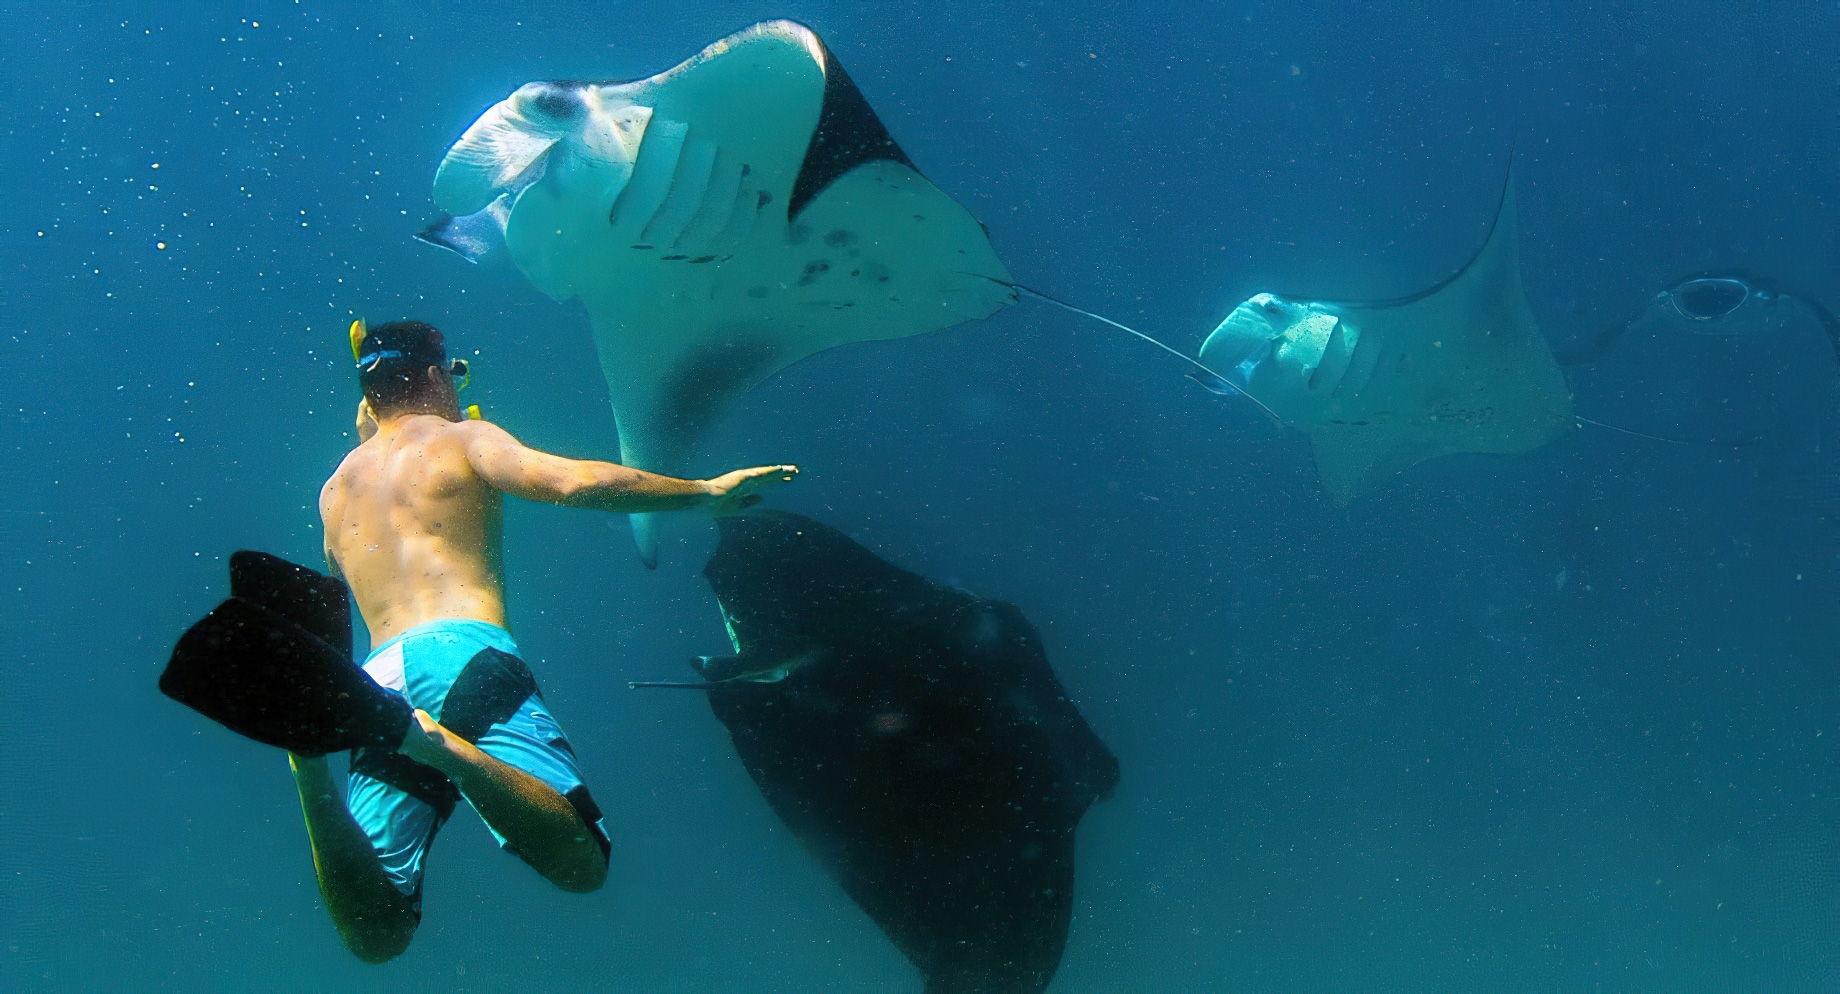 Anantara Thigu Maldives Resort – South Male Atoll, Maldives – Snorkelling with Manta Rays